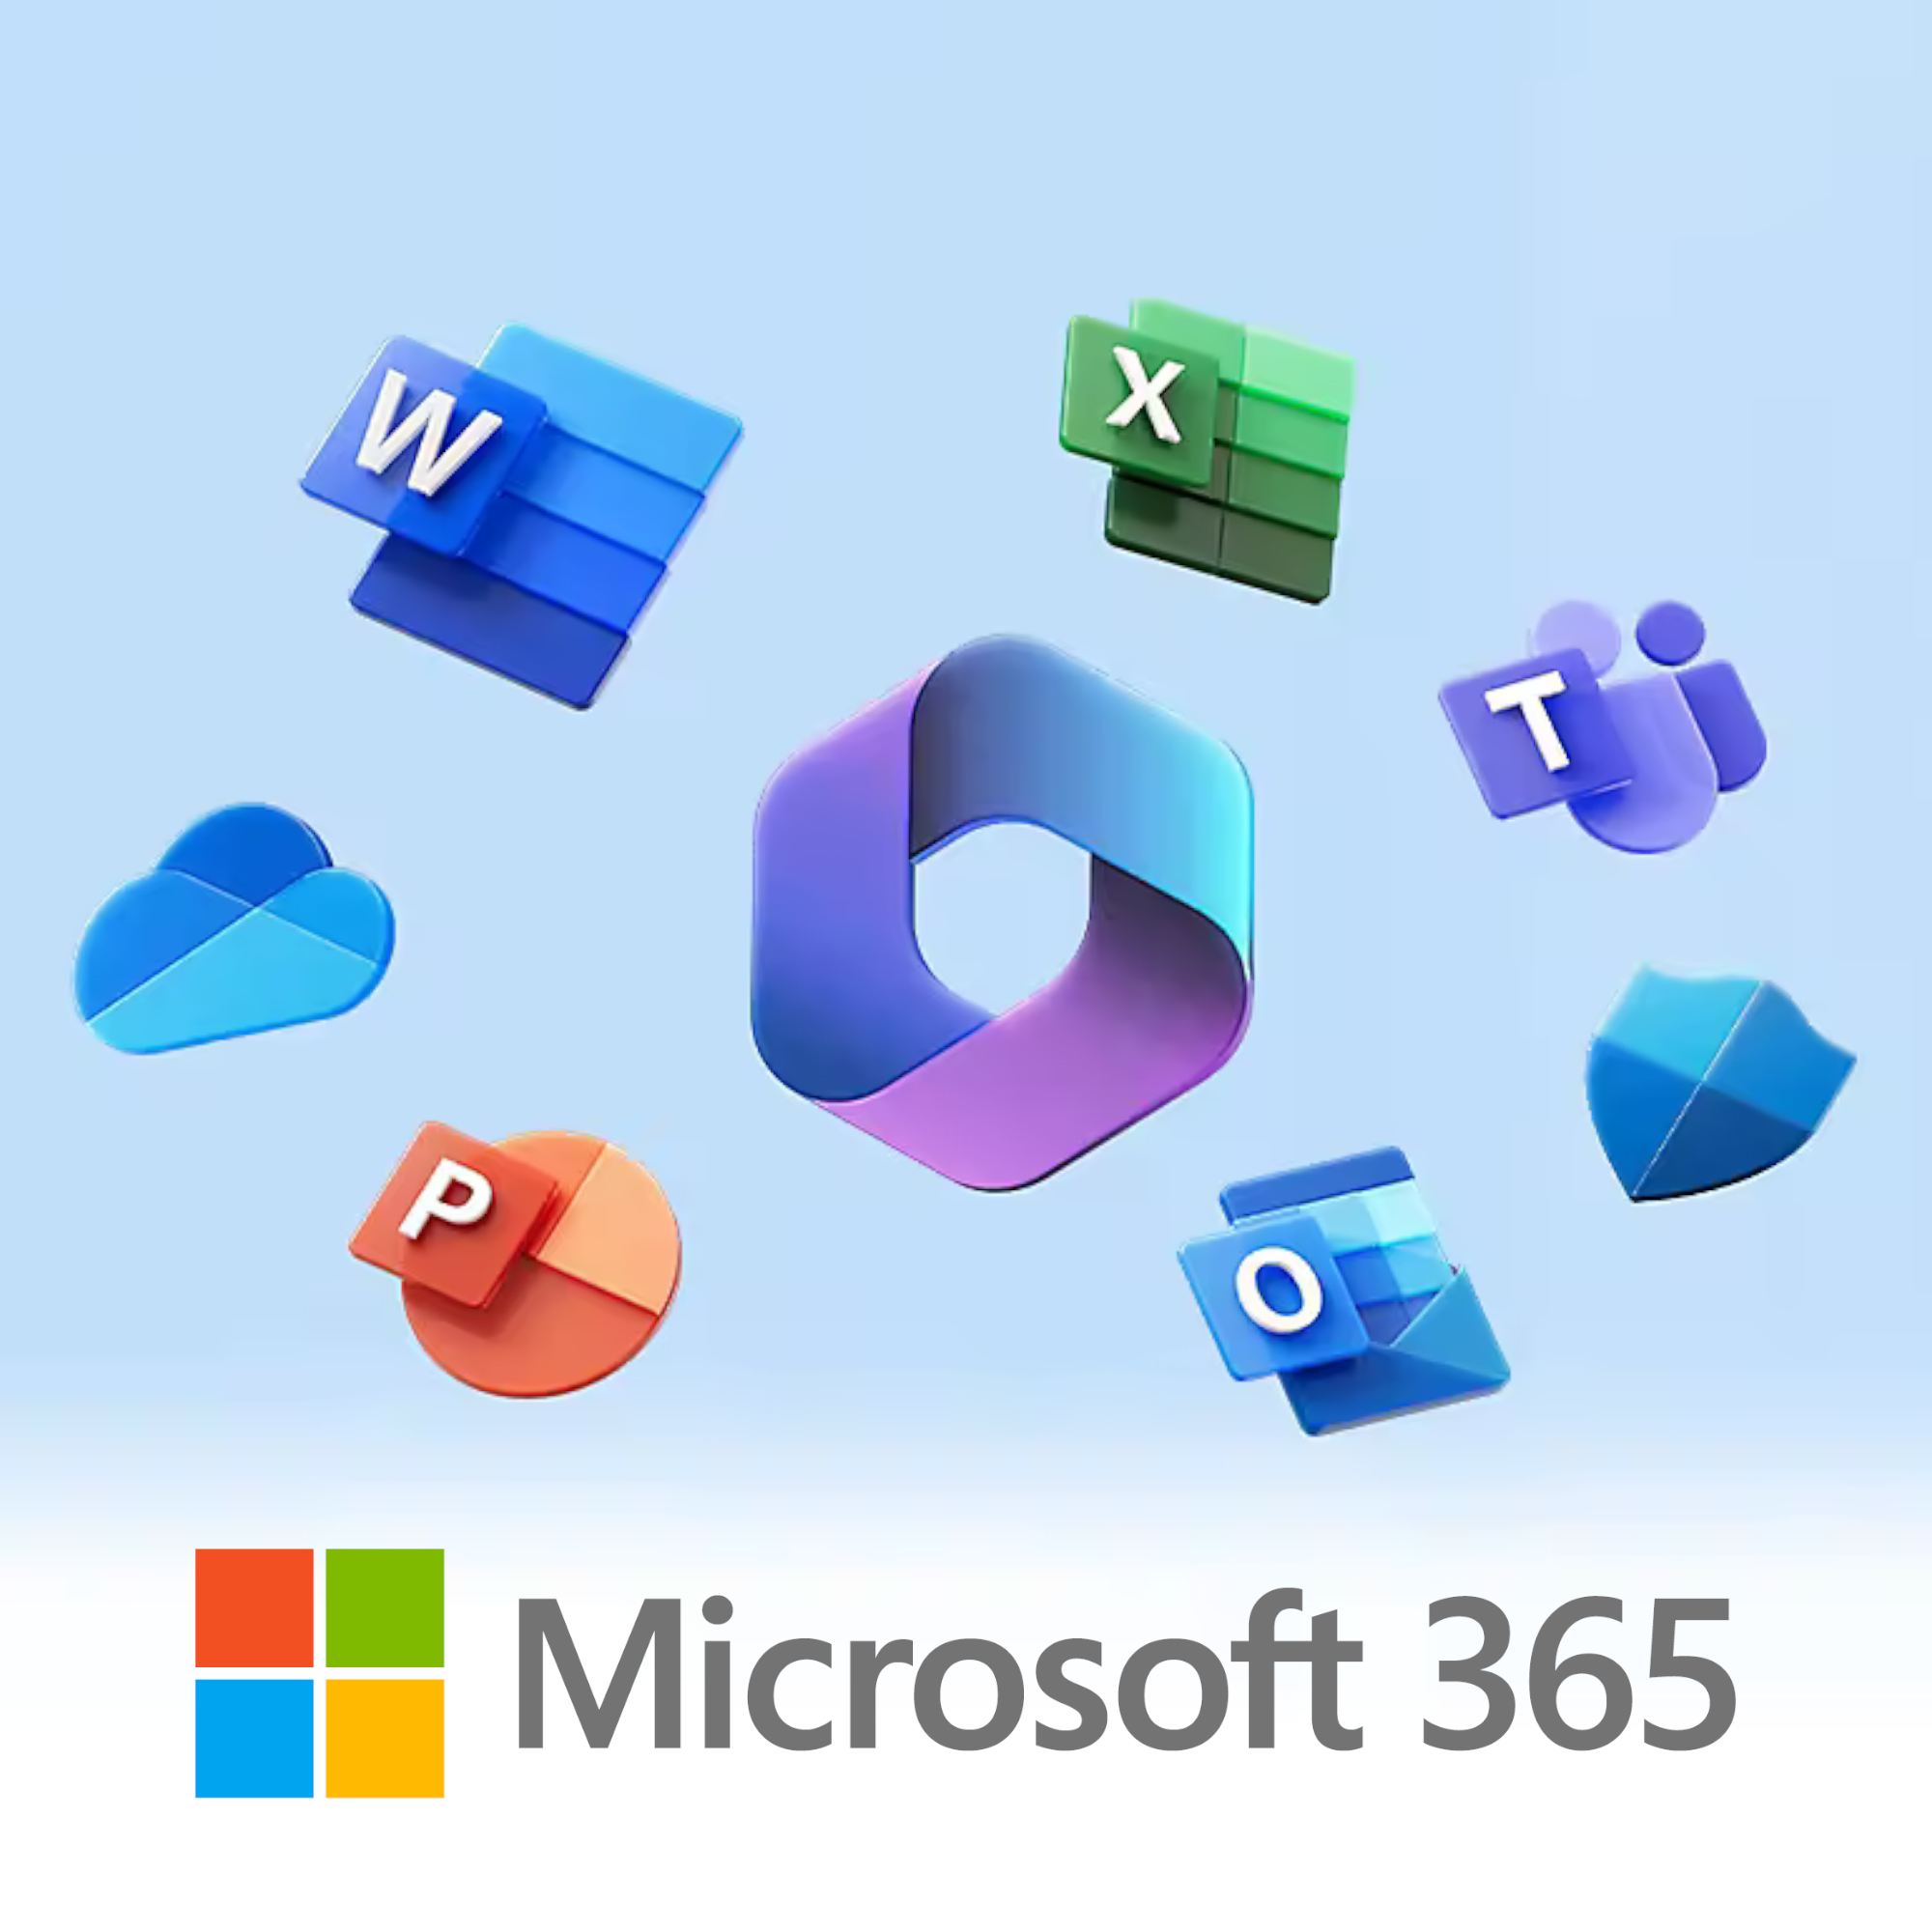 imagen de microsoft 365 y logos de aplicaciones